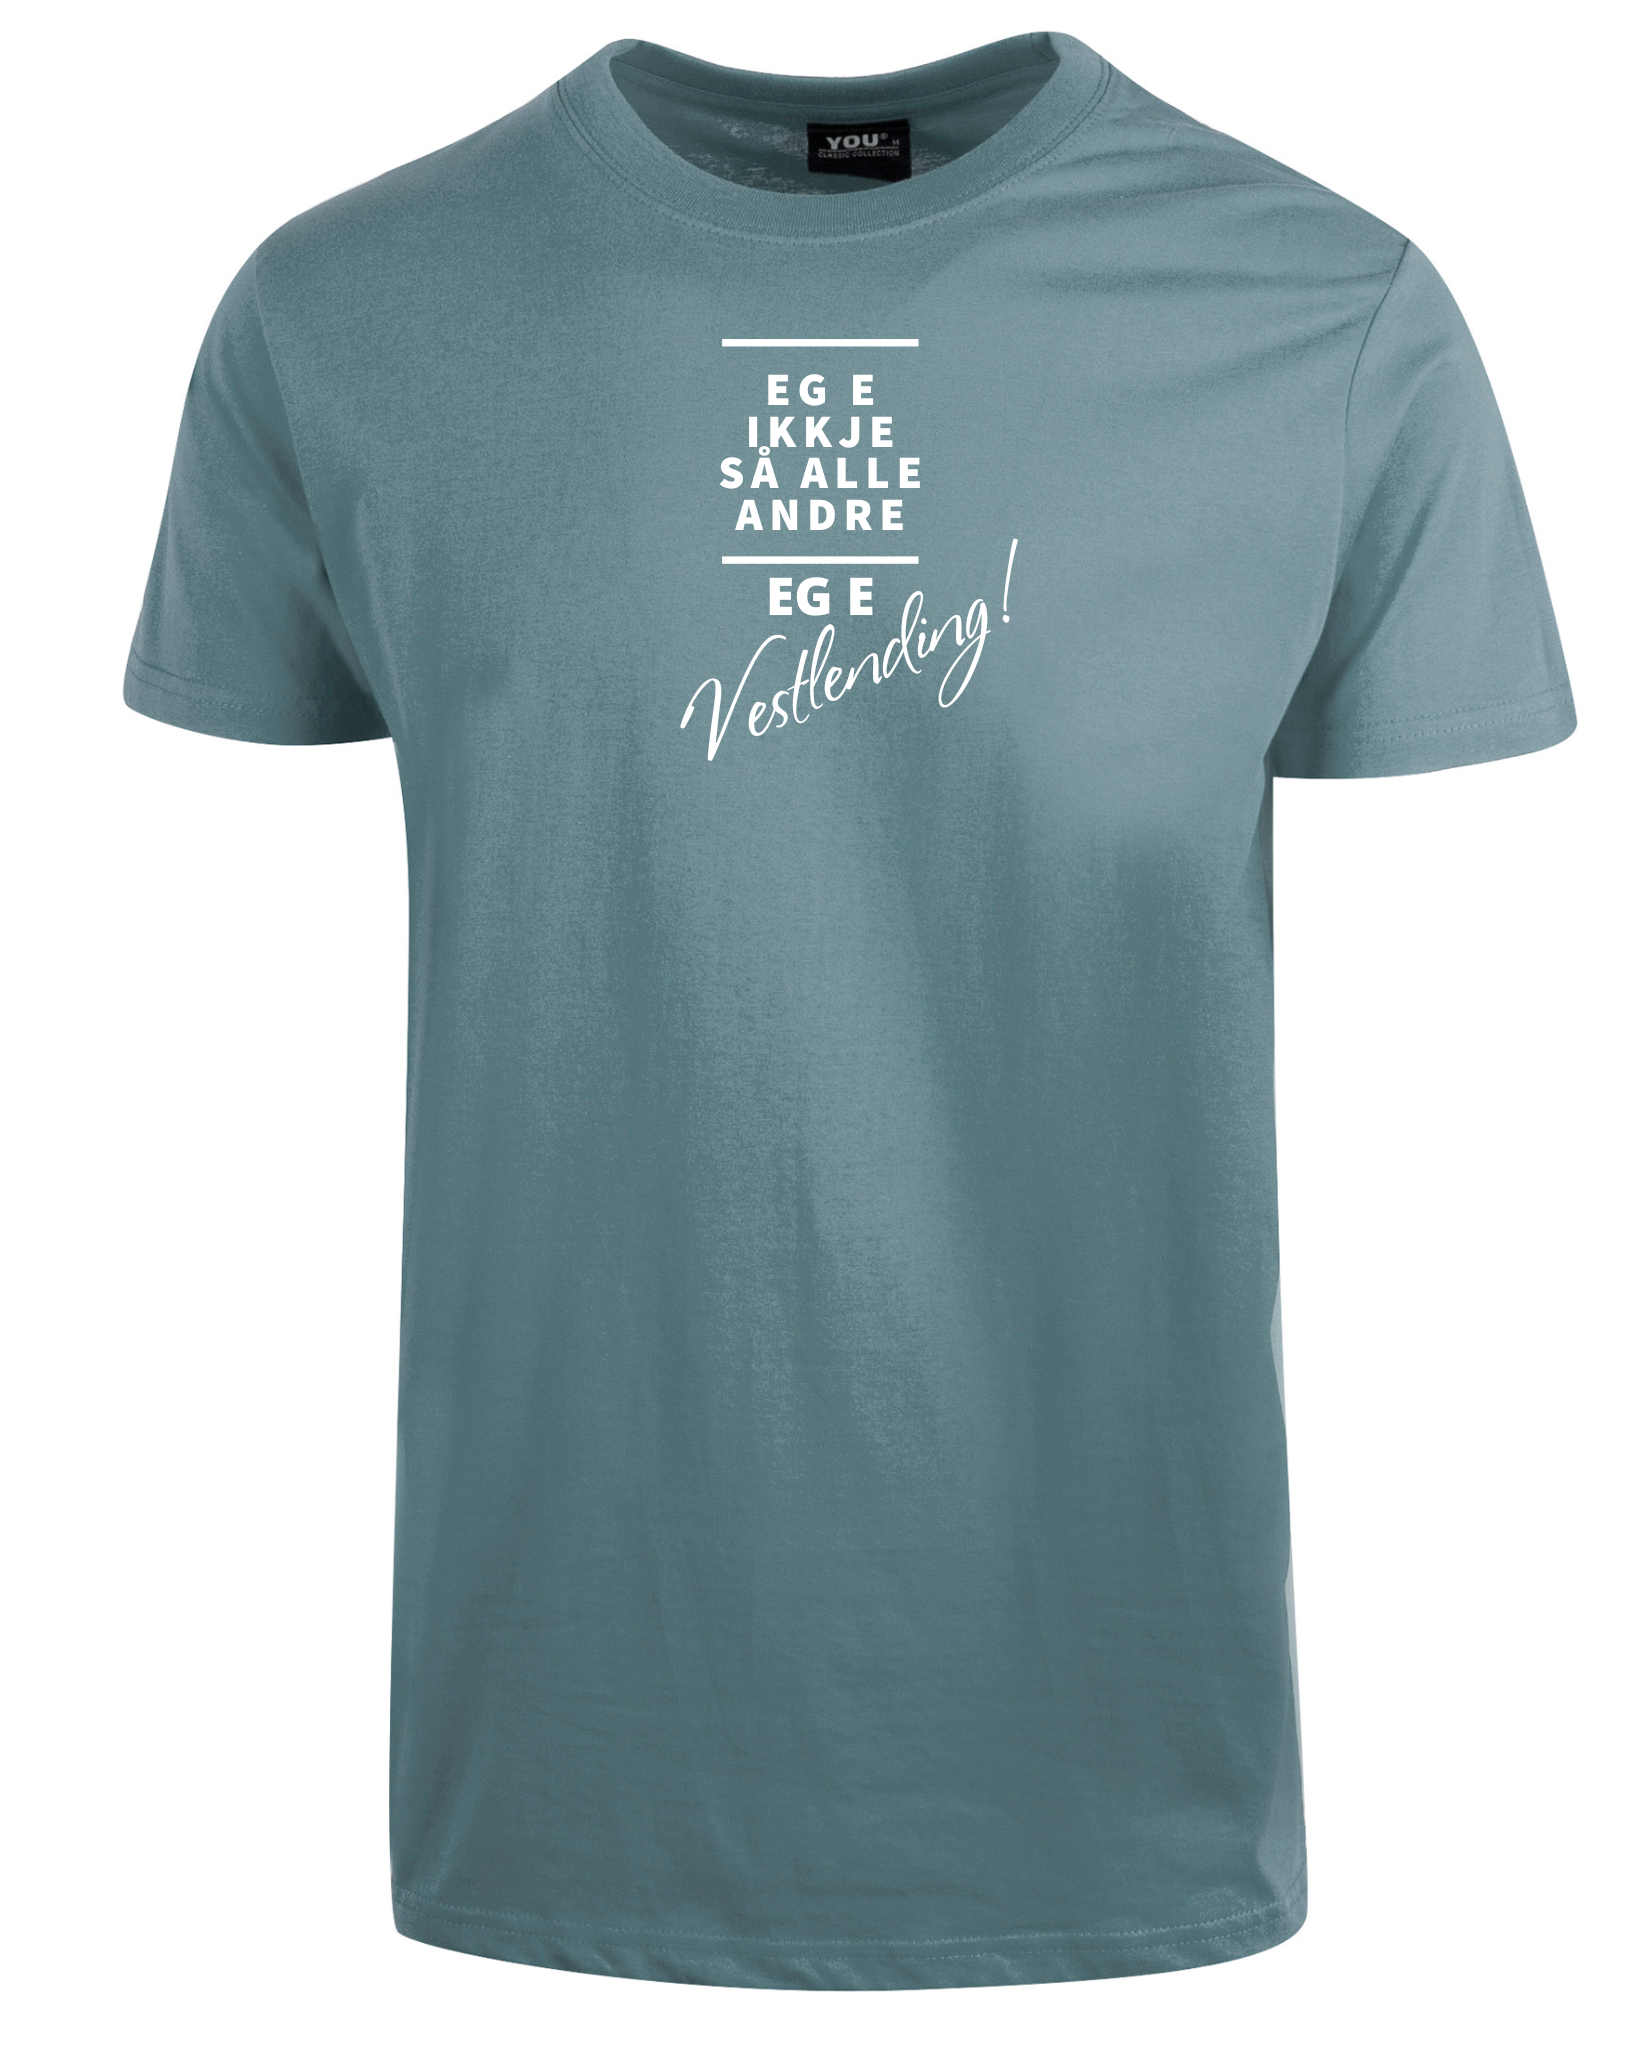 T-skjorte med artig tekst "Vestlending" - VOIS Design